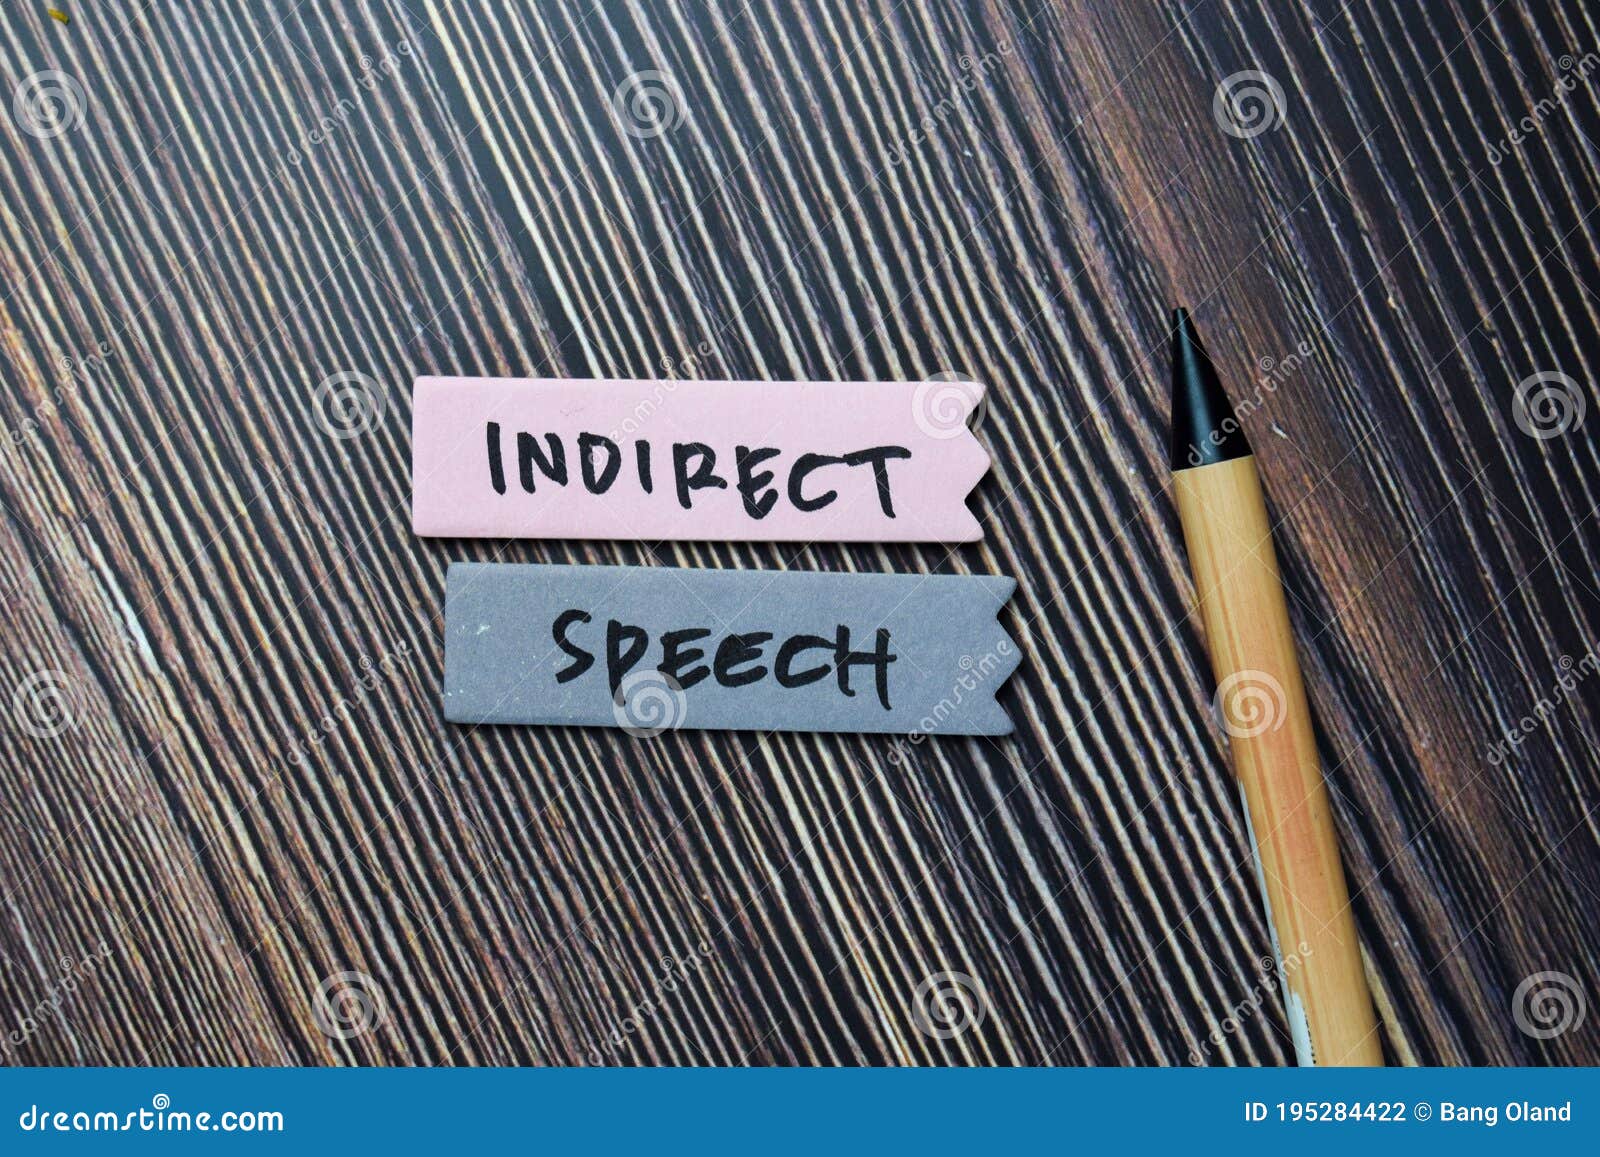 indirect speech write on sticky notes  on office desk